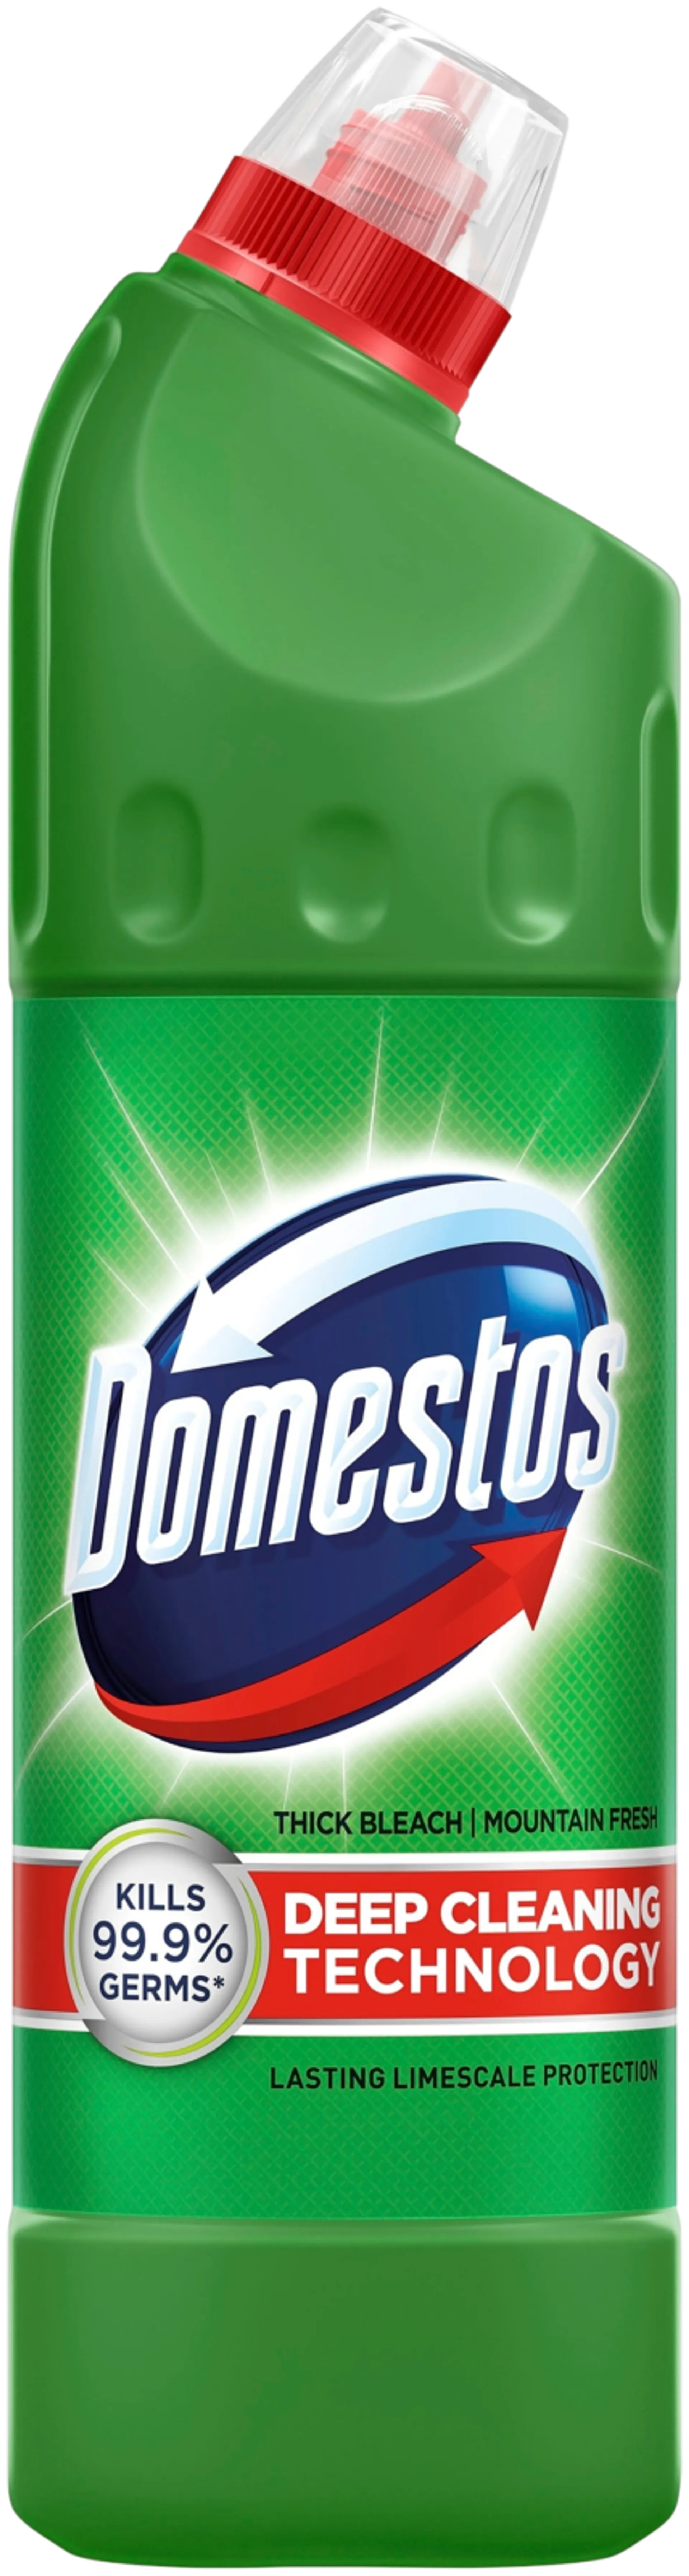 Domestos Mountain Fresh WC-puhdistusaine Desinfioiva 750 ml